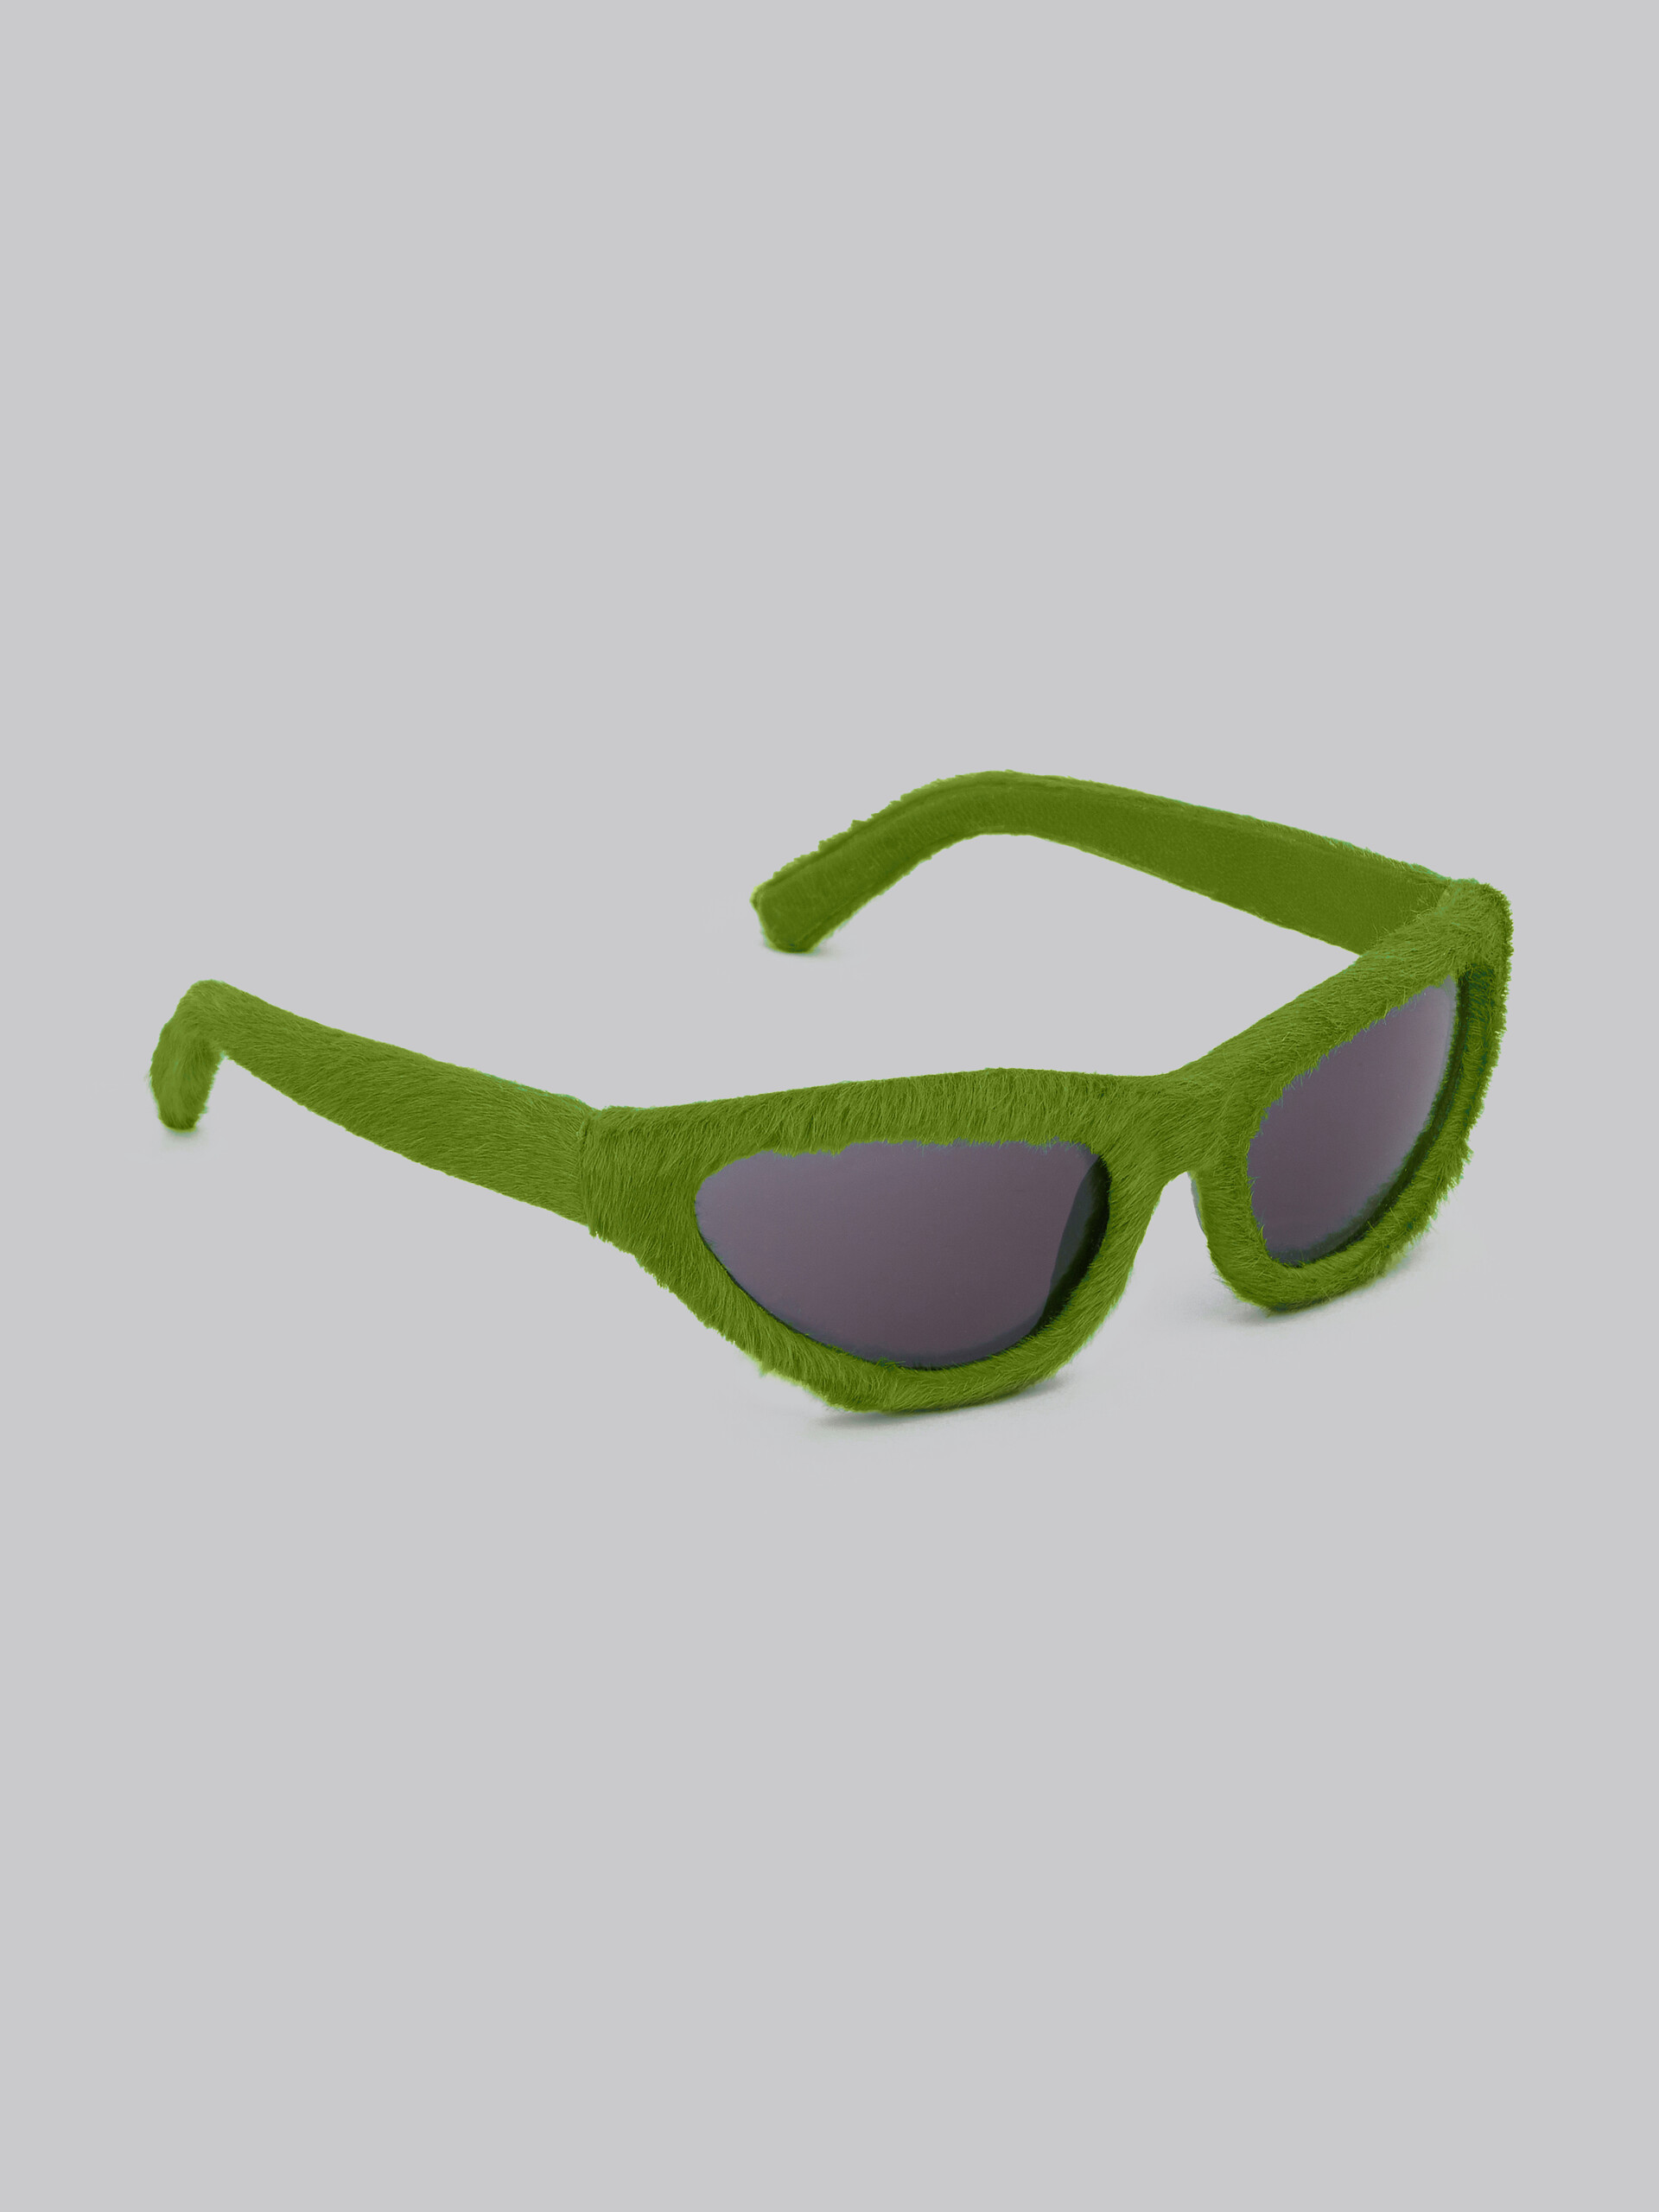 Sonnenbrille Mavericks in Fellgrün - Optisch - Image 3